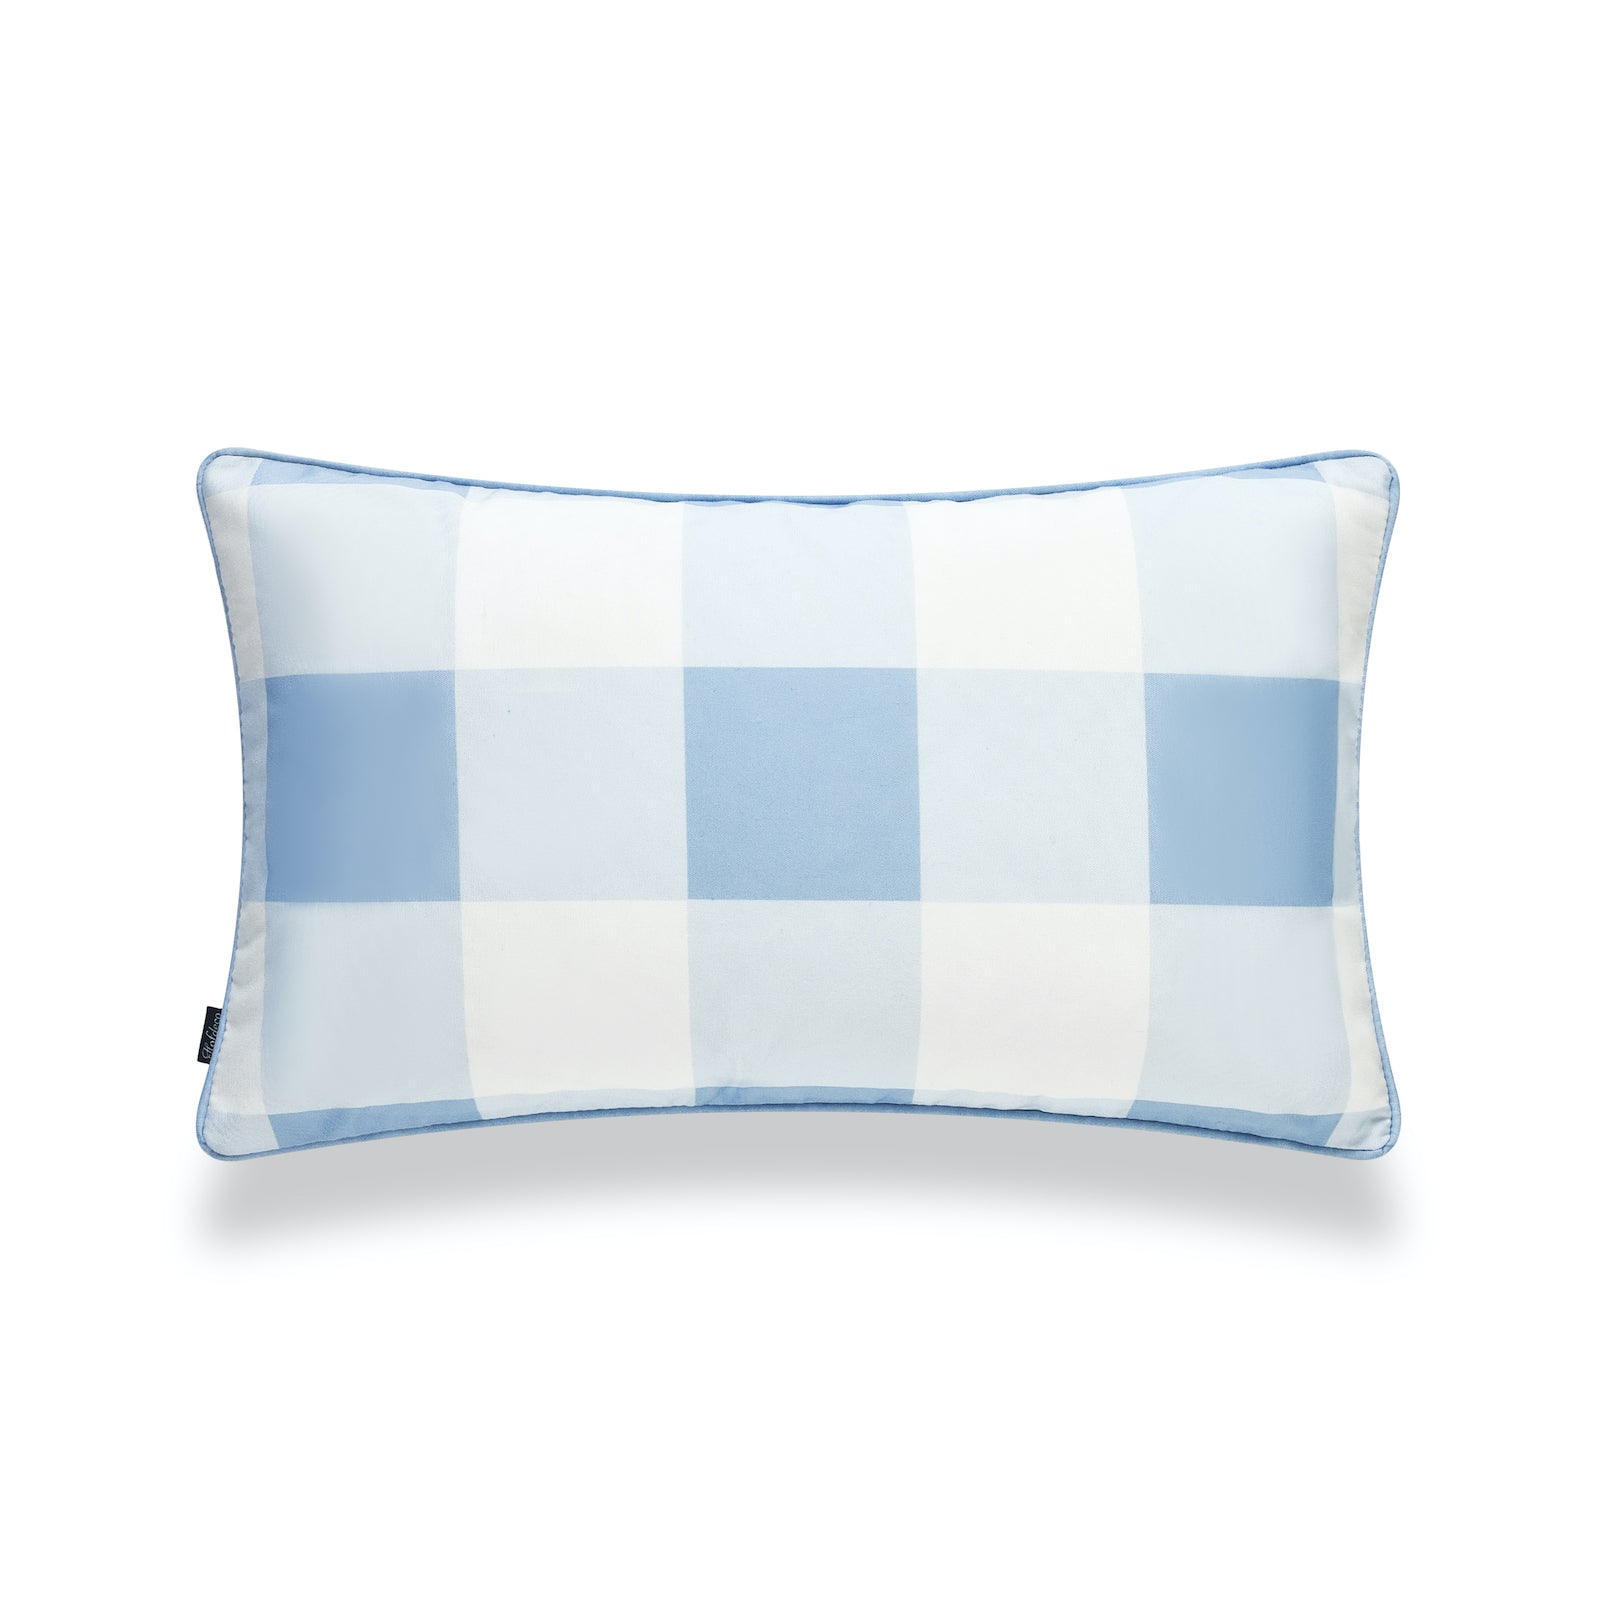 Coastal Indoor Outdoor Lumbar Pillow Cover, Buffalo Check, Baby Blue, 12"x20"